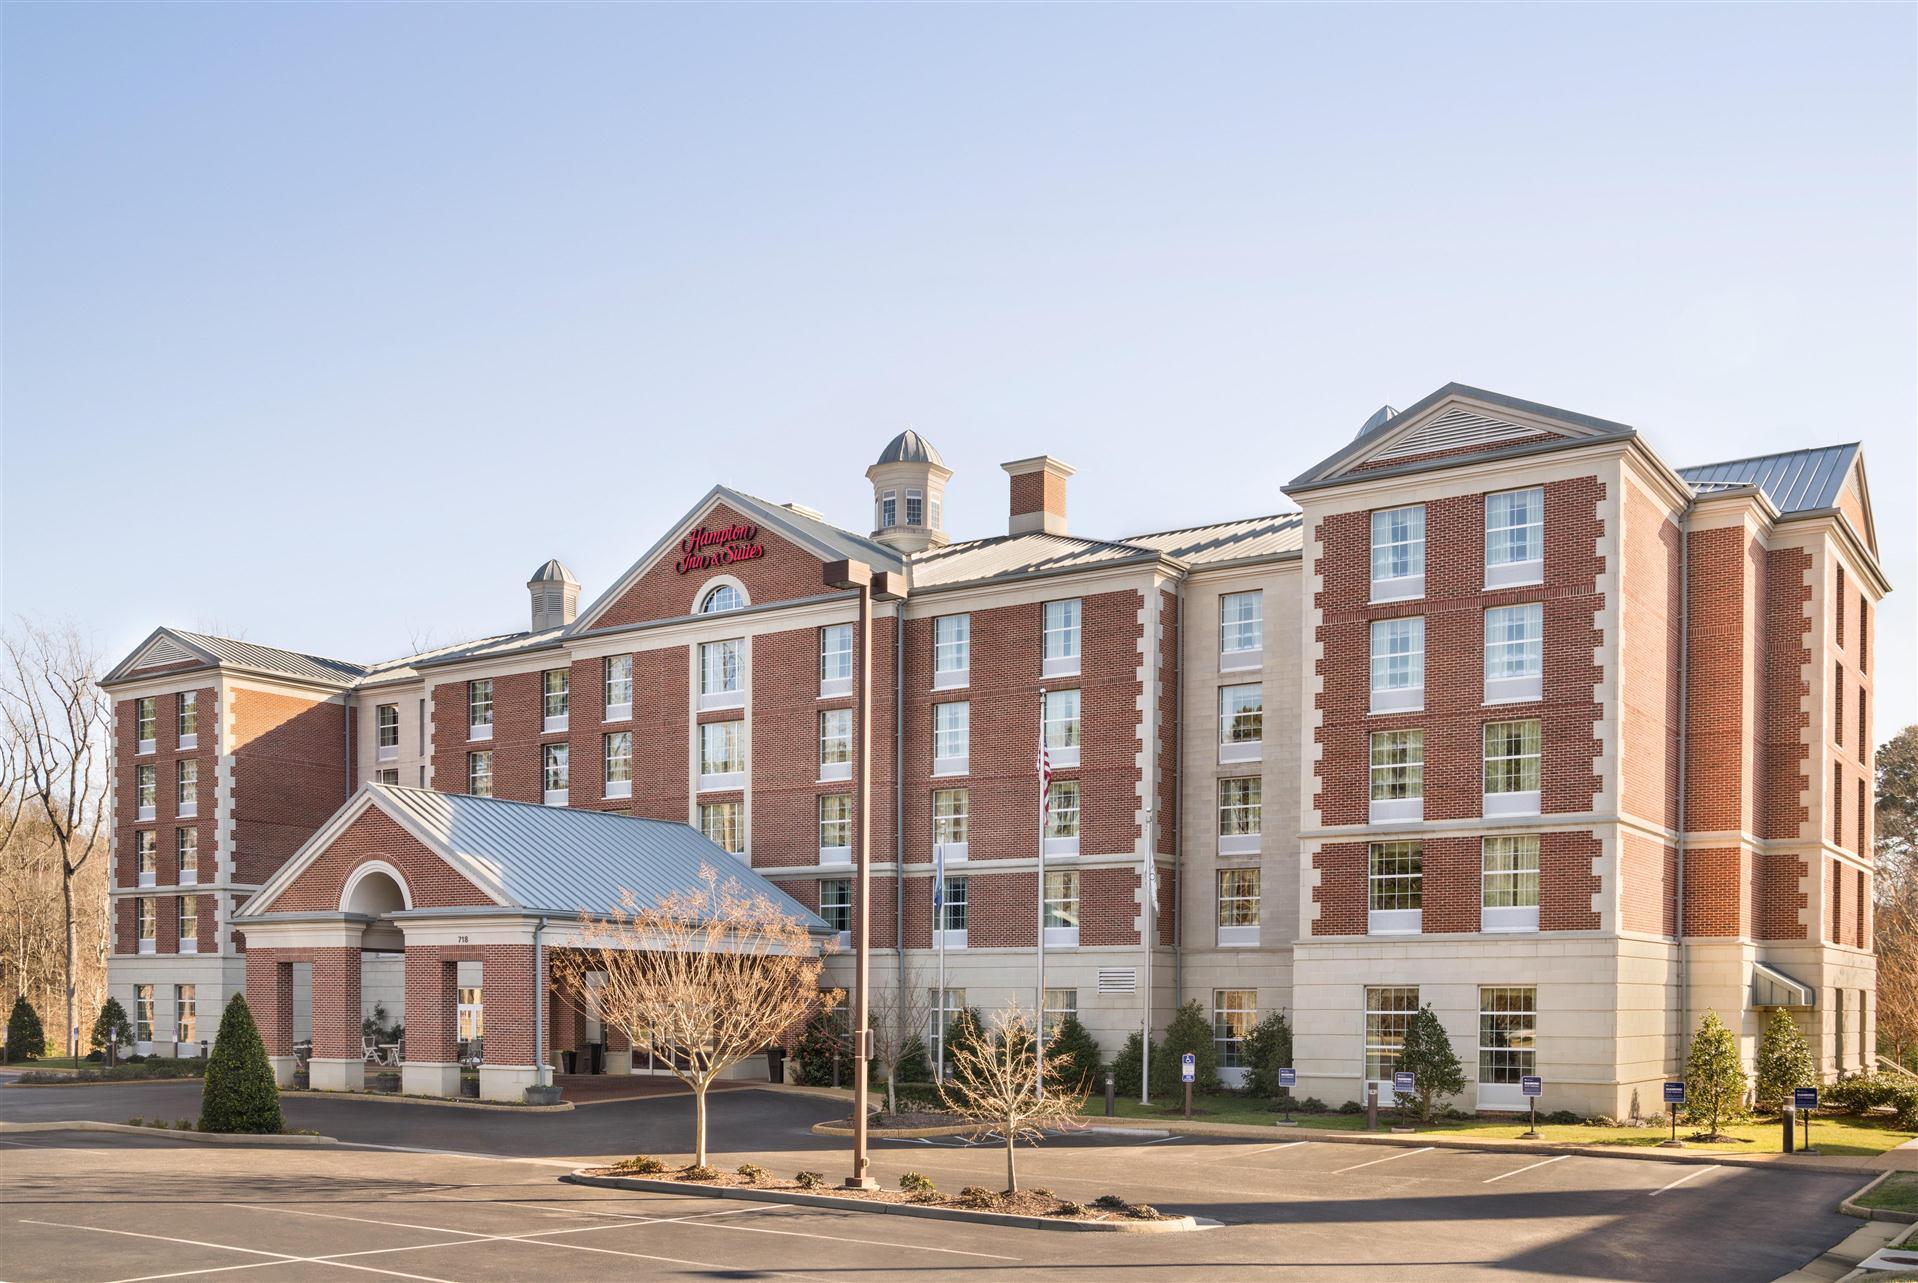 Hampton Inn & Suites Williamsburg-Central in Williamsburg, VA